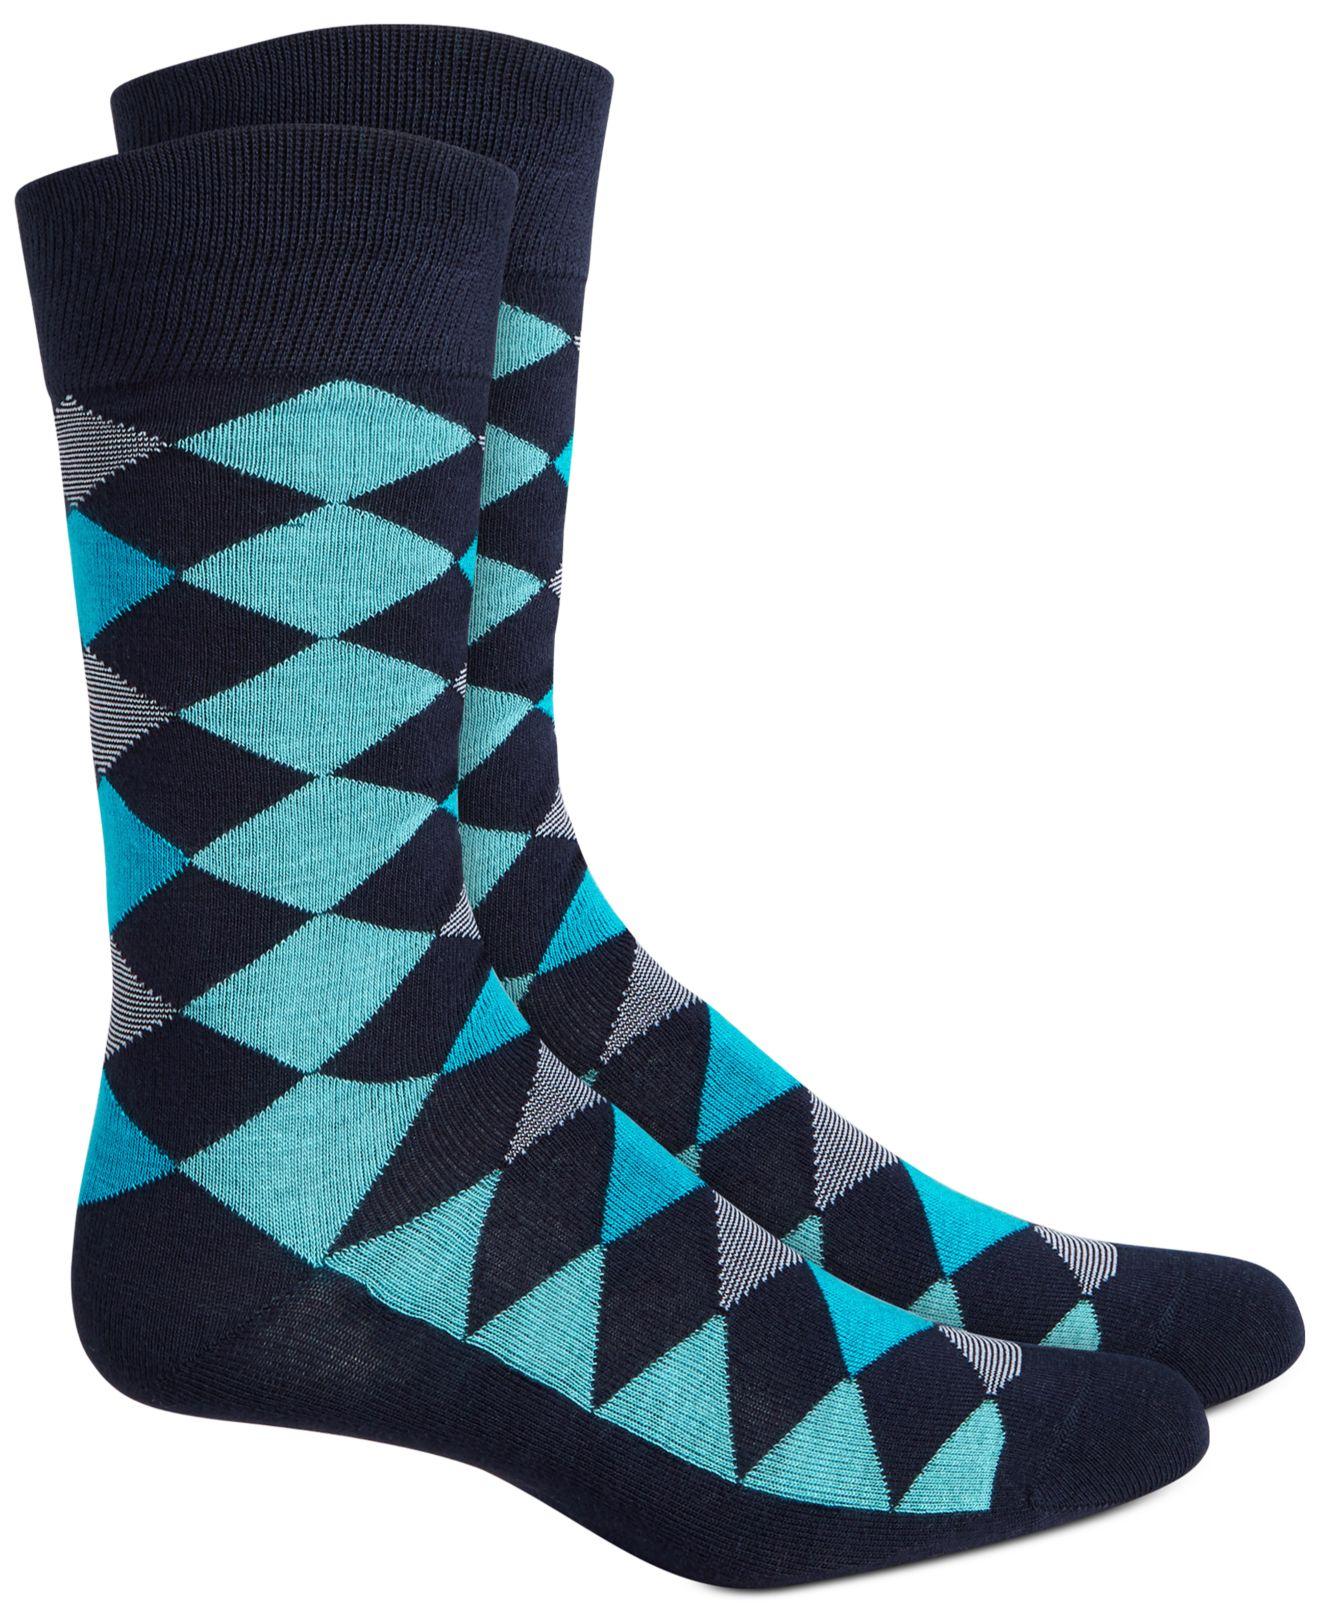 Lyst - Alfani Argyle Socks, Created For Macy's in Blue for Men